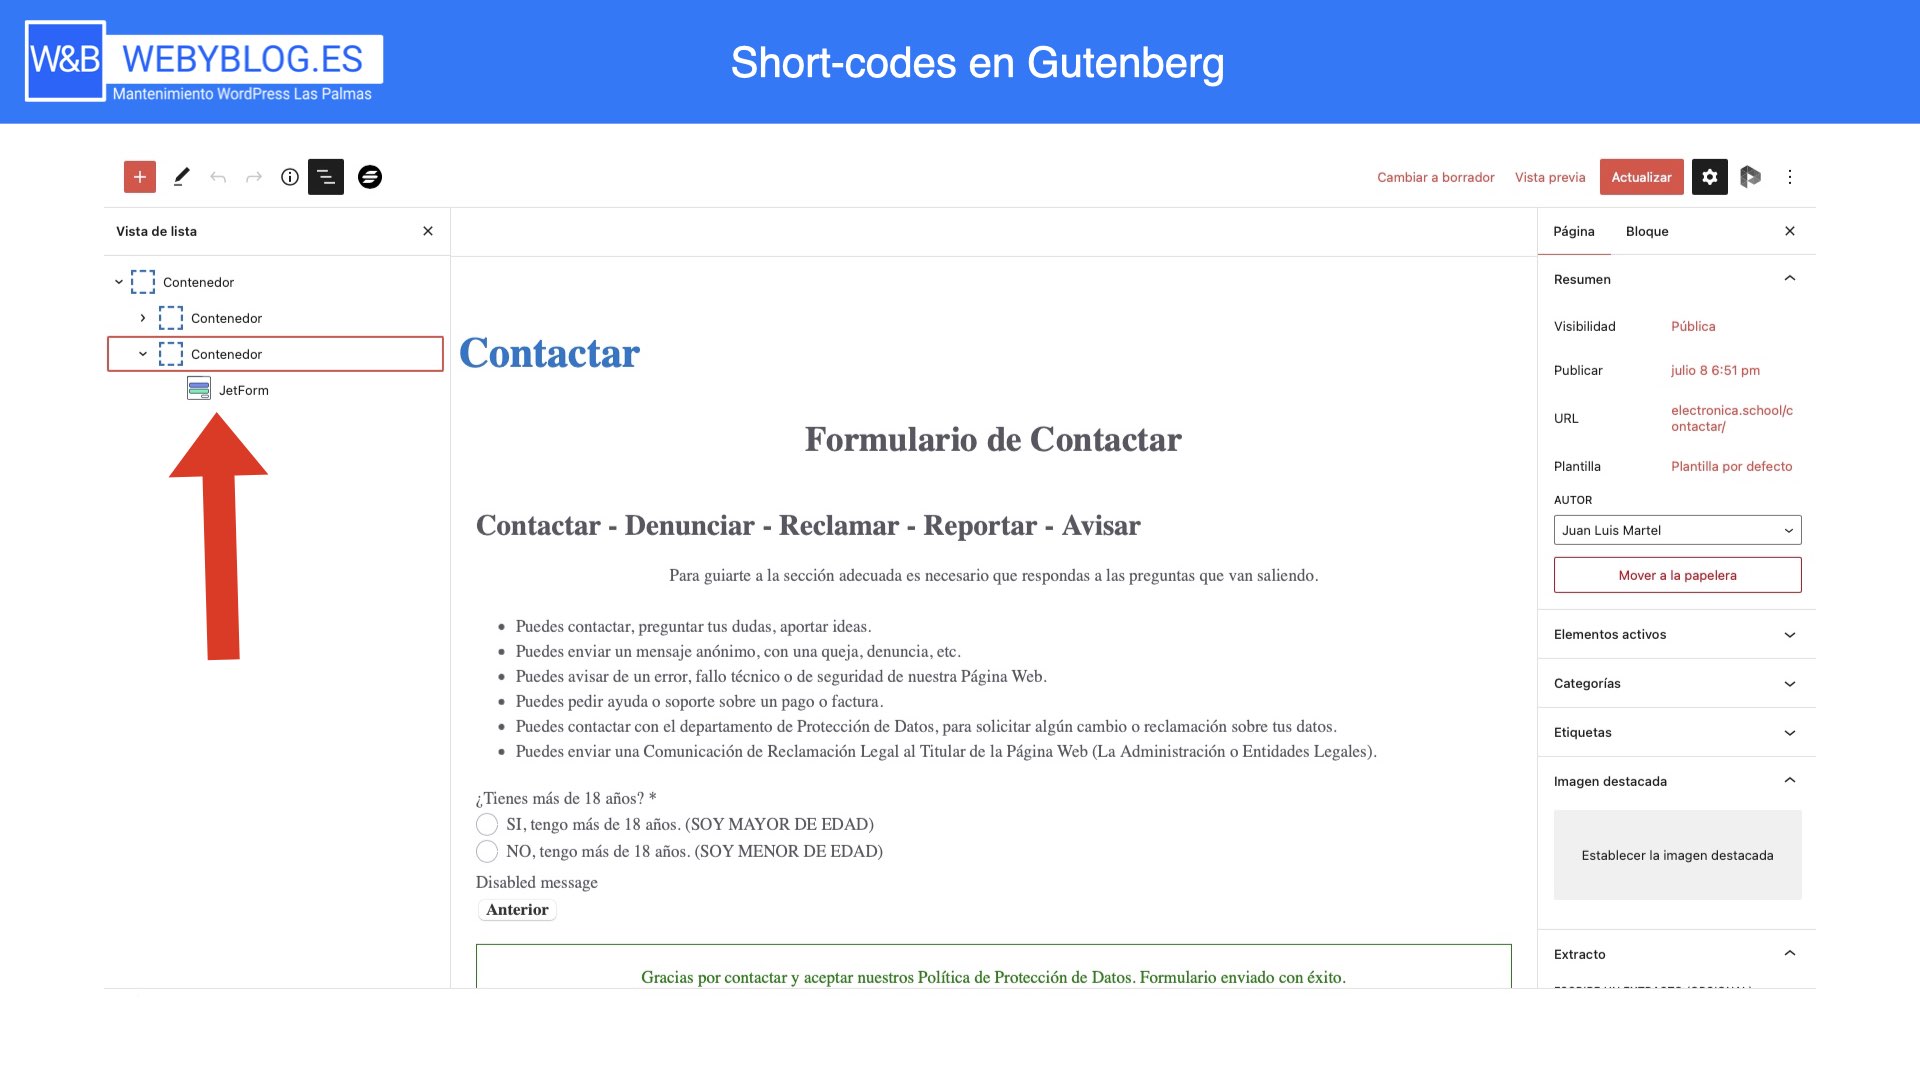 ¿Qué es mejor usar un shortcode o el bloque de Gutenberg?